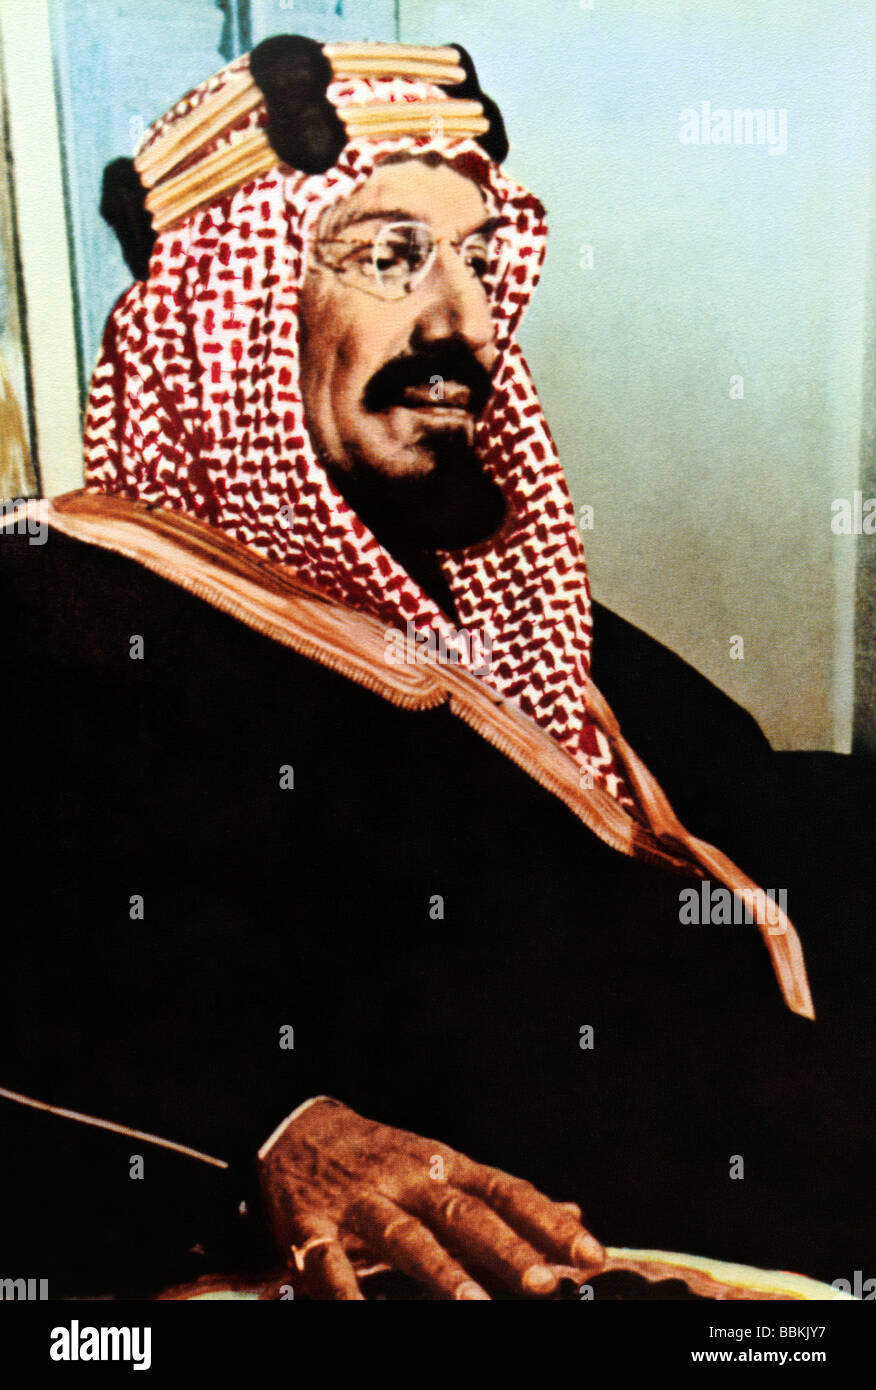 Aziz saud abdul bin Abdulaziz bin